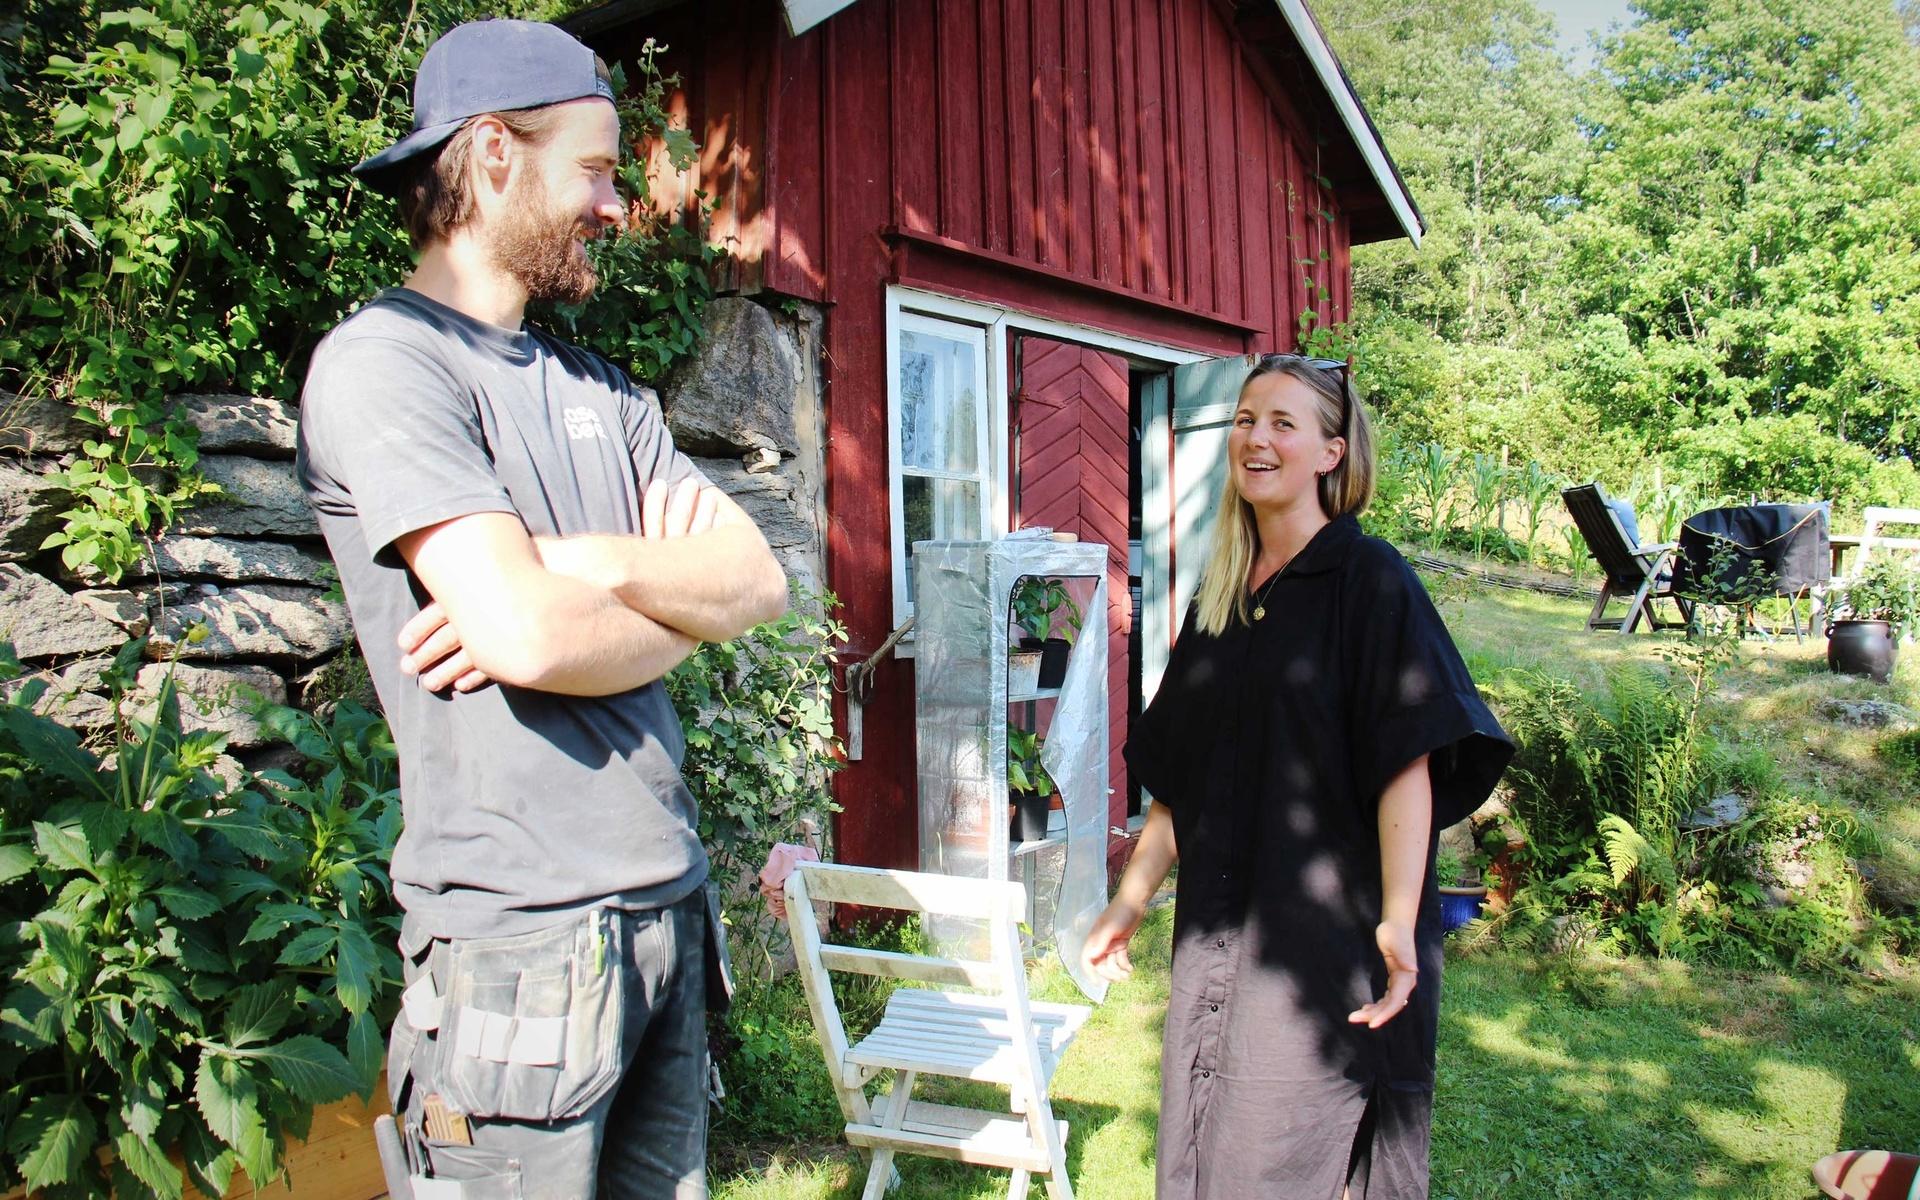 Albin Andersson och Sofie Wallenius gillar båda att fixa med huset, även om de inte är helt inne på exakt samma saker. ”Jag tycker det är kul när det kommer till att bygga kök och så, men att bygga bjälklag och isolera är inte jättekul”, tycker Sofie. 